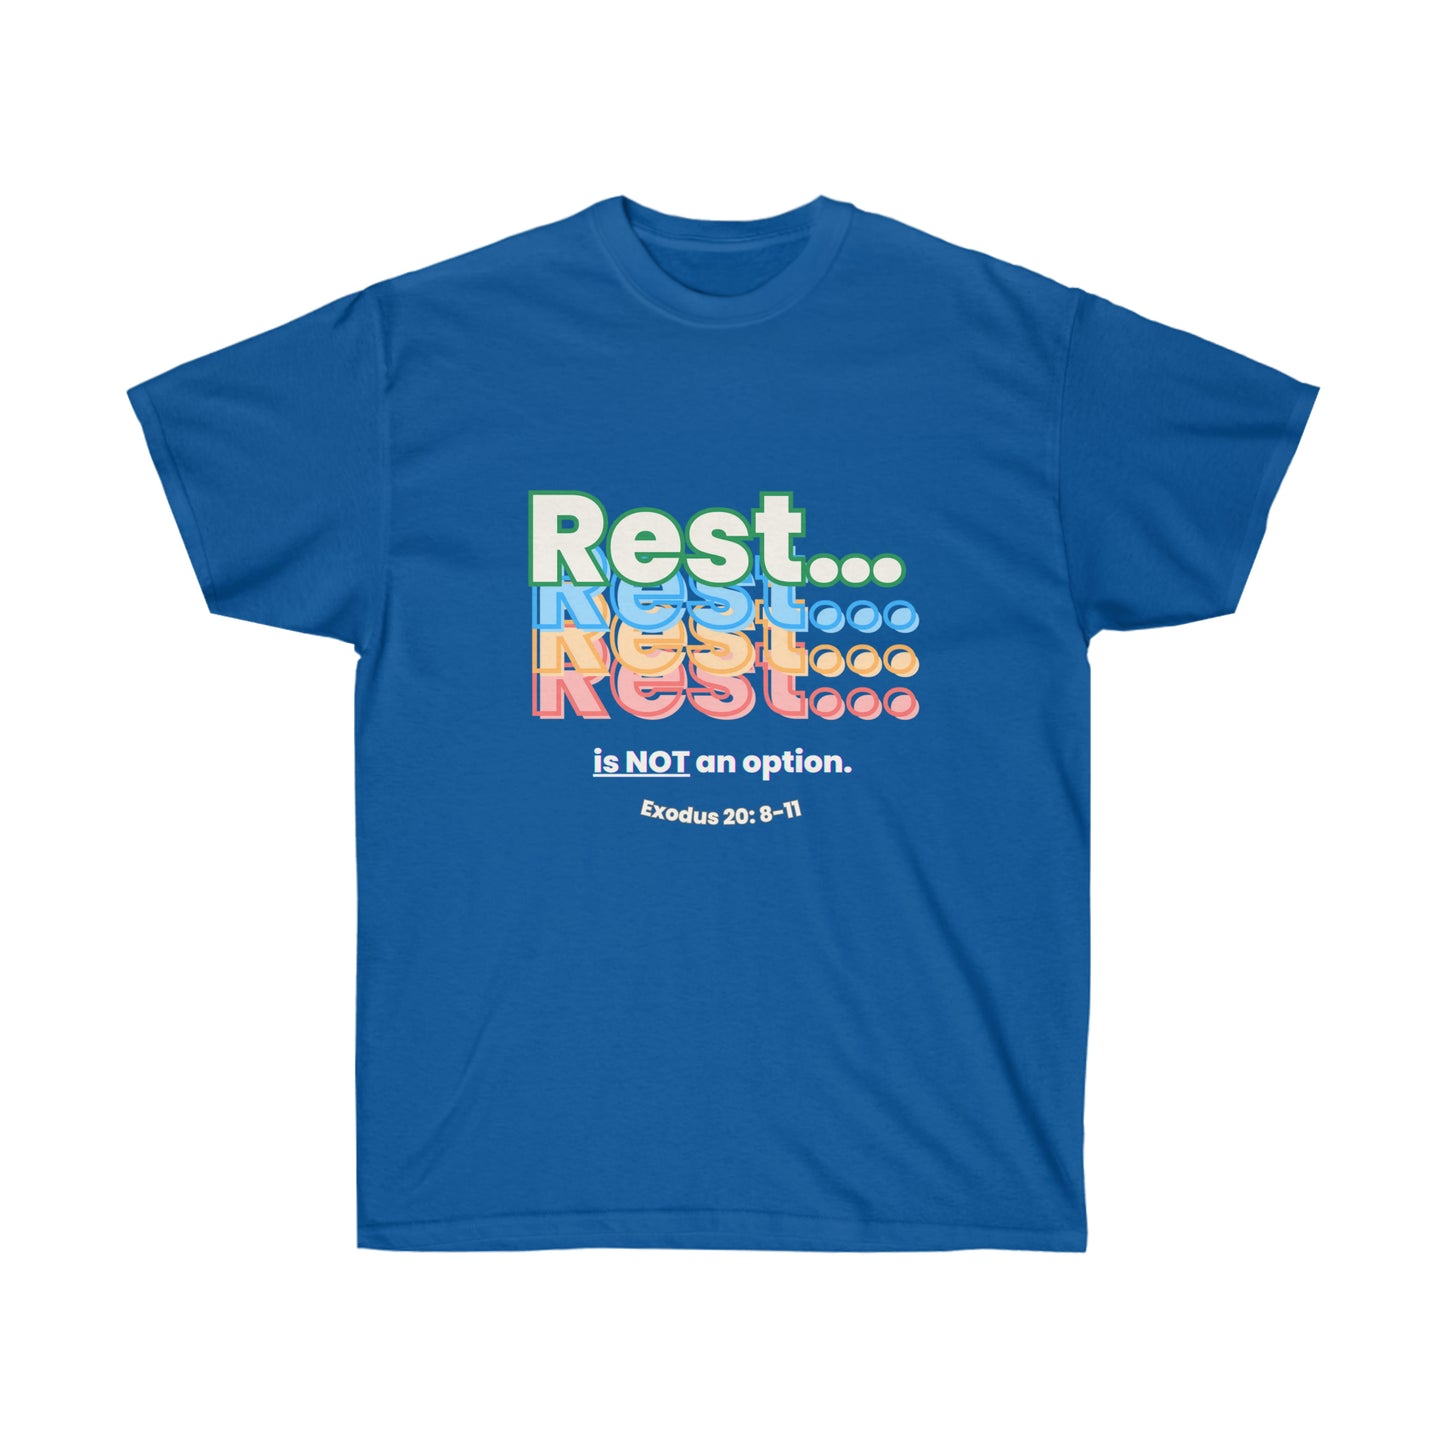 Rest is NOT an option (Exodus 20: 8-11) Shirt